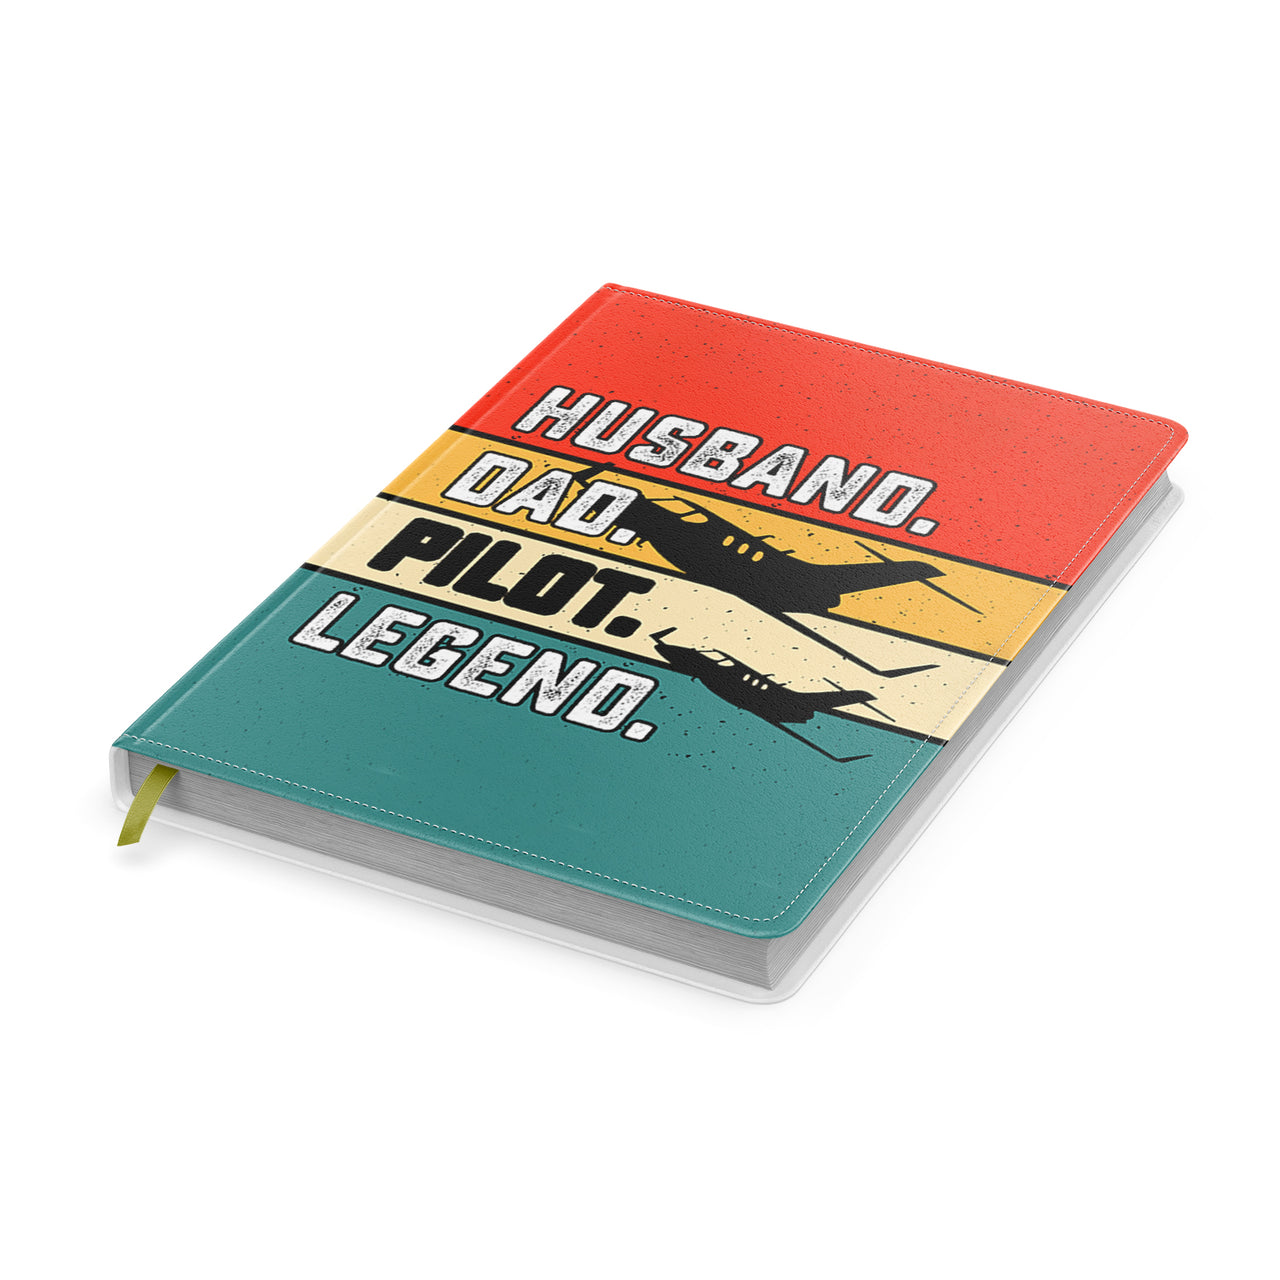 Husband & Dad & Pilot & Legend Designed Notebooks